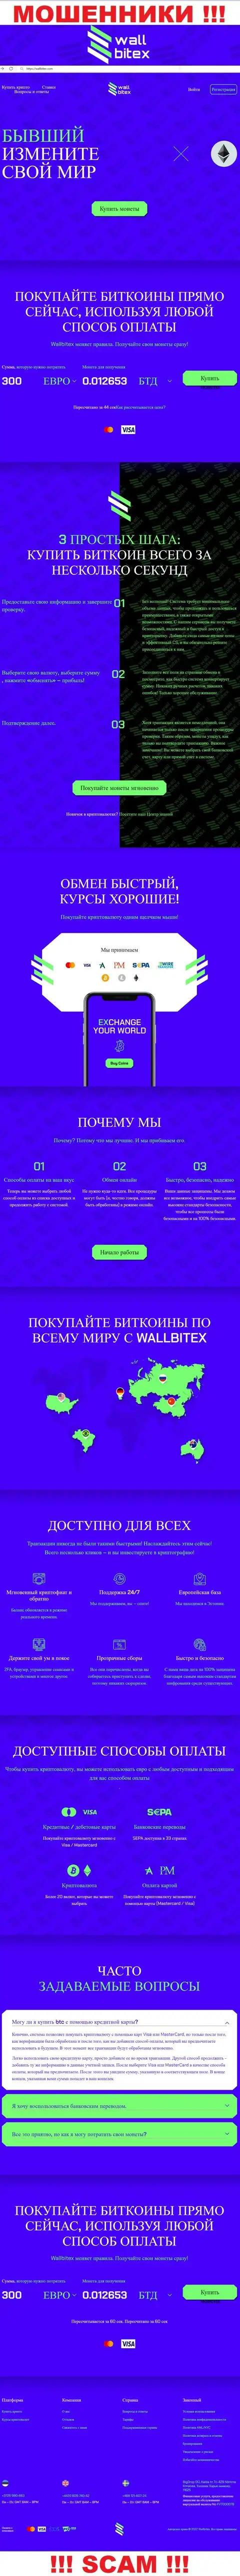 WallBitex Com это официальный интернет-портал противозаконно действующей конторы WallBitex